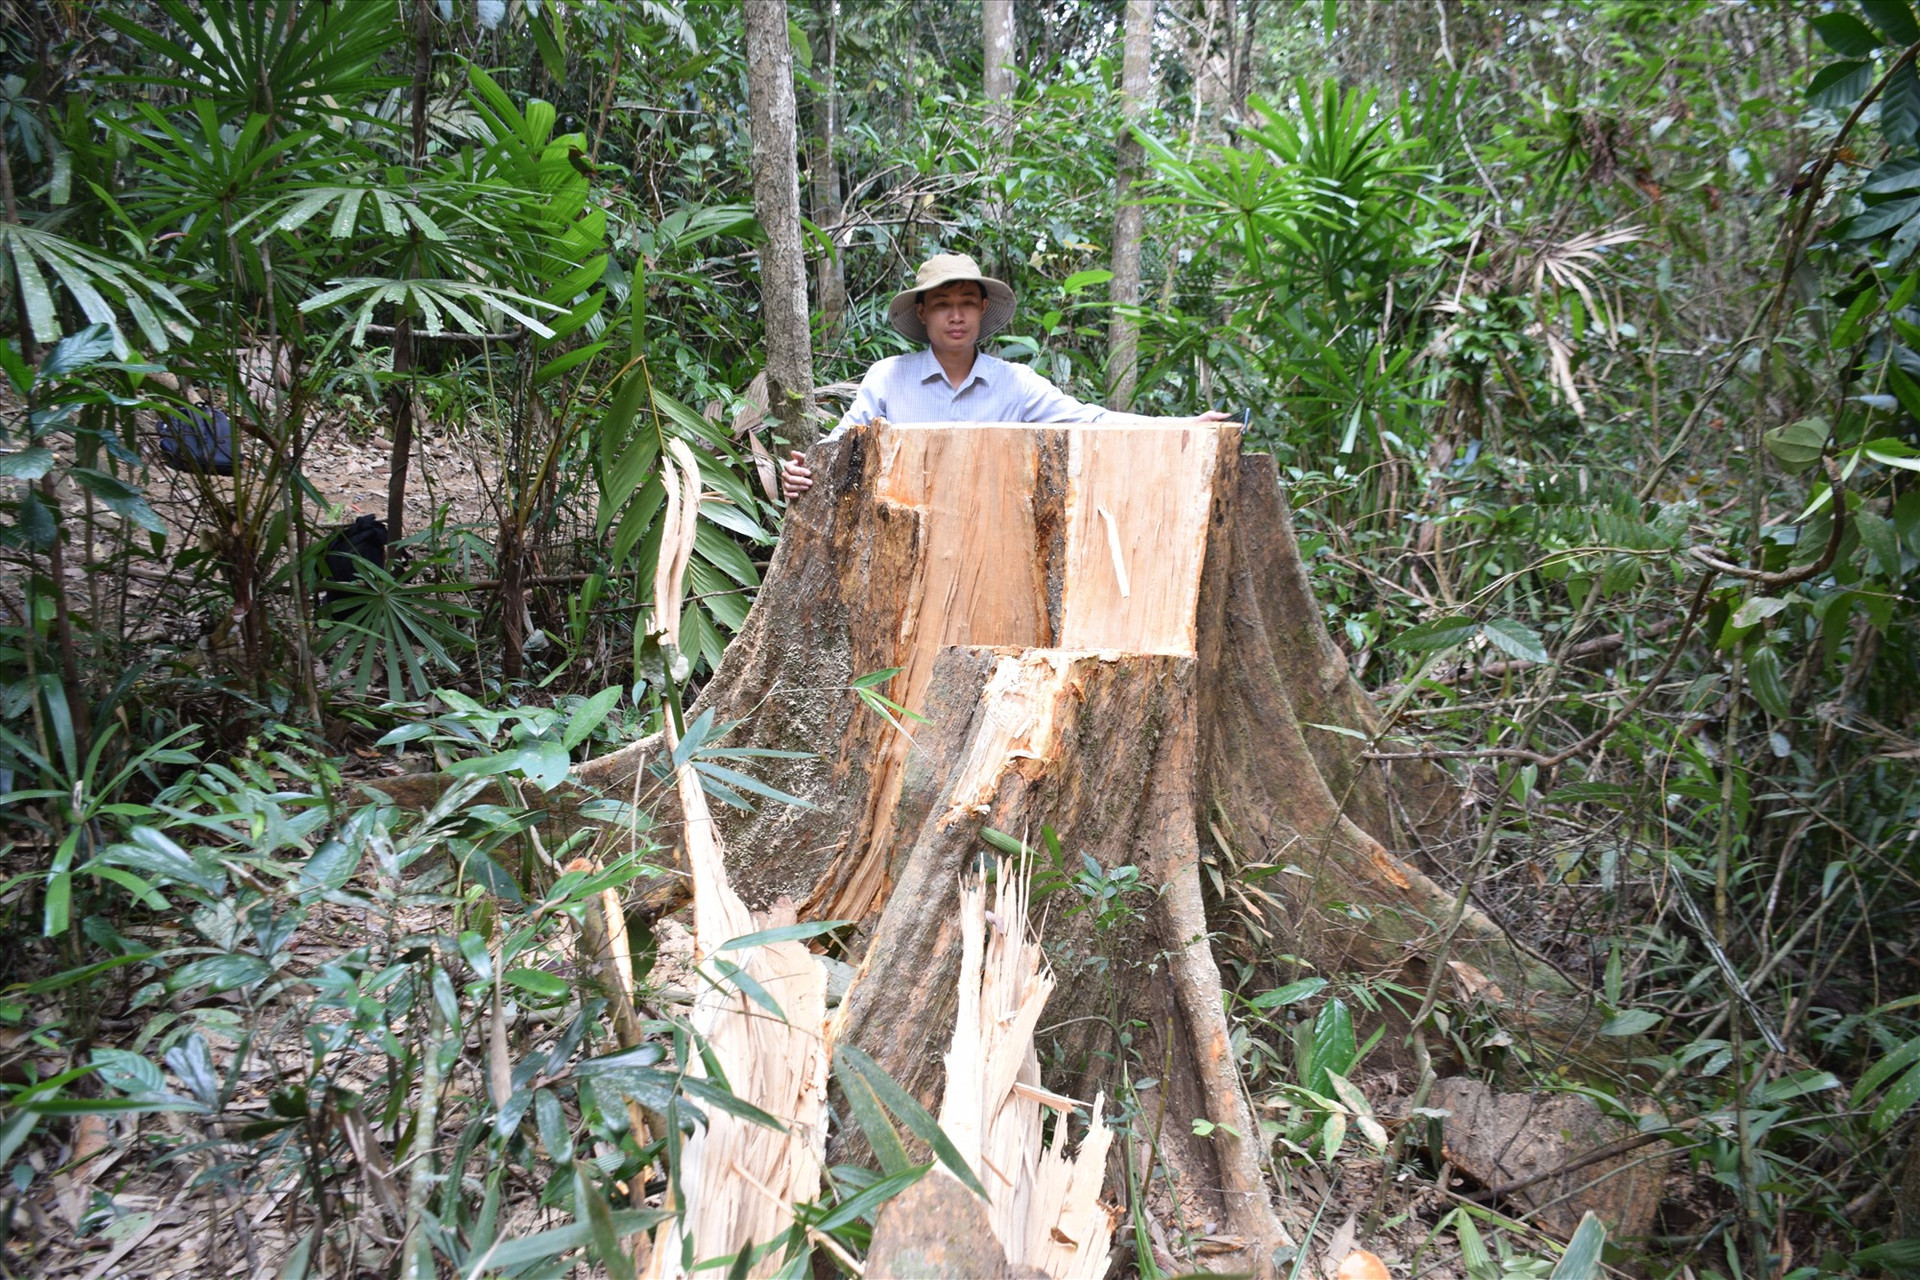 Một cây gỗ lớn ở khu vực rừng đầu nguồn sông Nước Oa, khu vực giáp ranh giữa Trà Tân, Trà Giáp (huyện Bắc Trà My) bị cưa hạ. Ảnh: THANH THẮNG